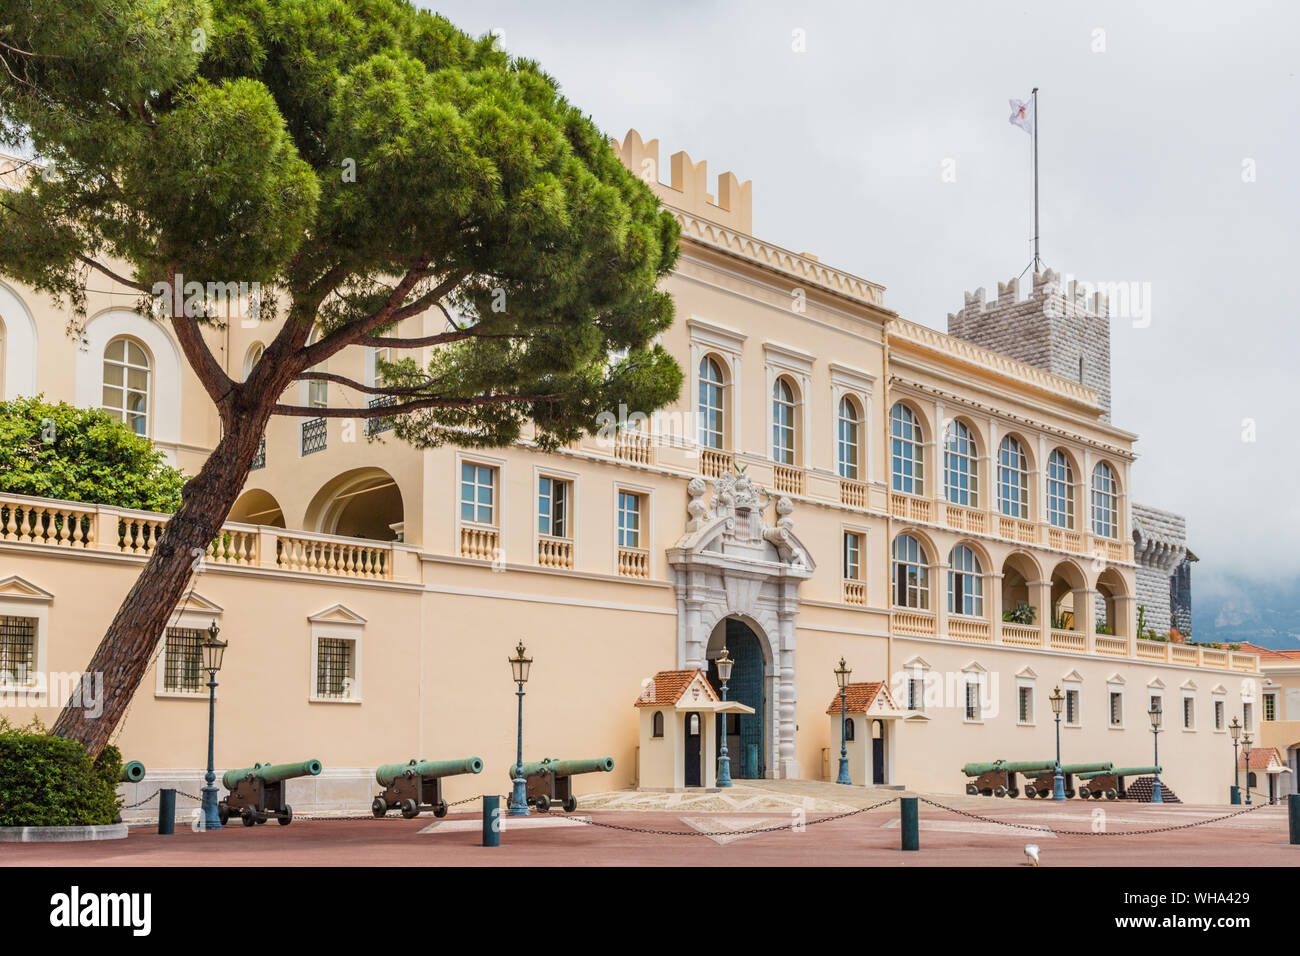 Prince's Palast von Monaco in Monaco, Cote d'Azur, Côte d'Azur, Mittelmeer, Frankreich, Europa Stockfoto